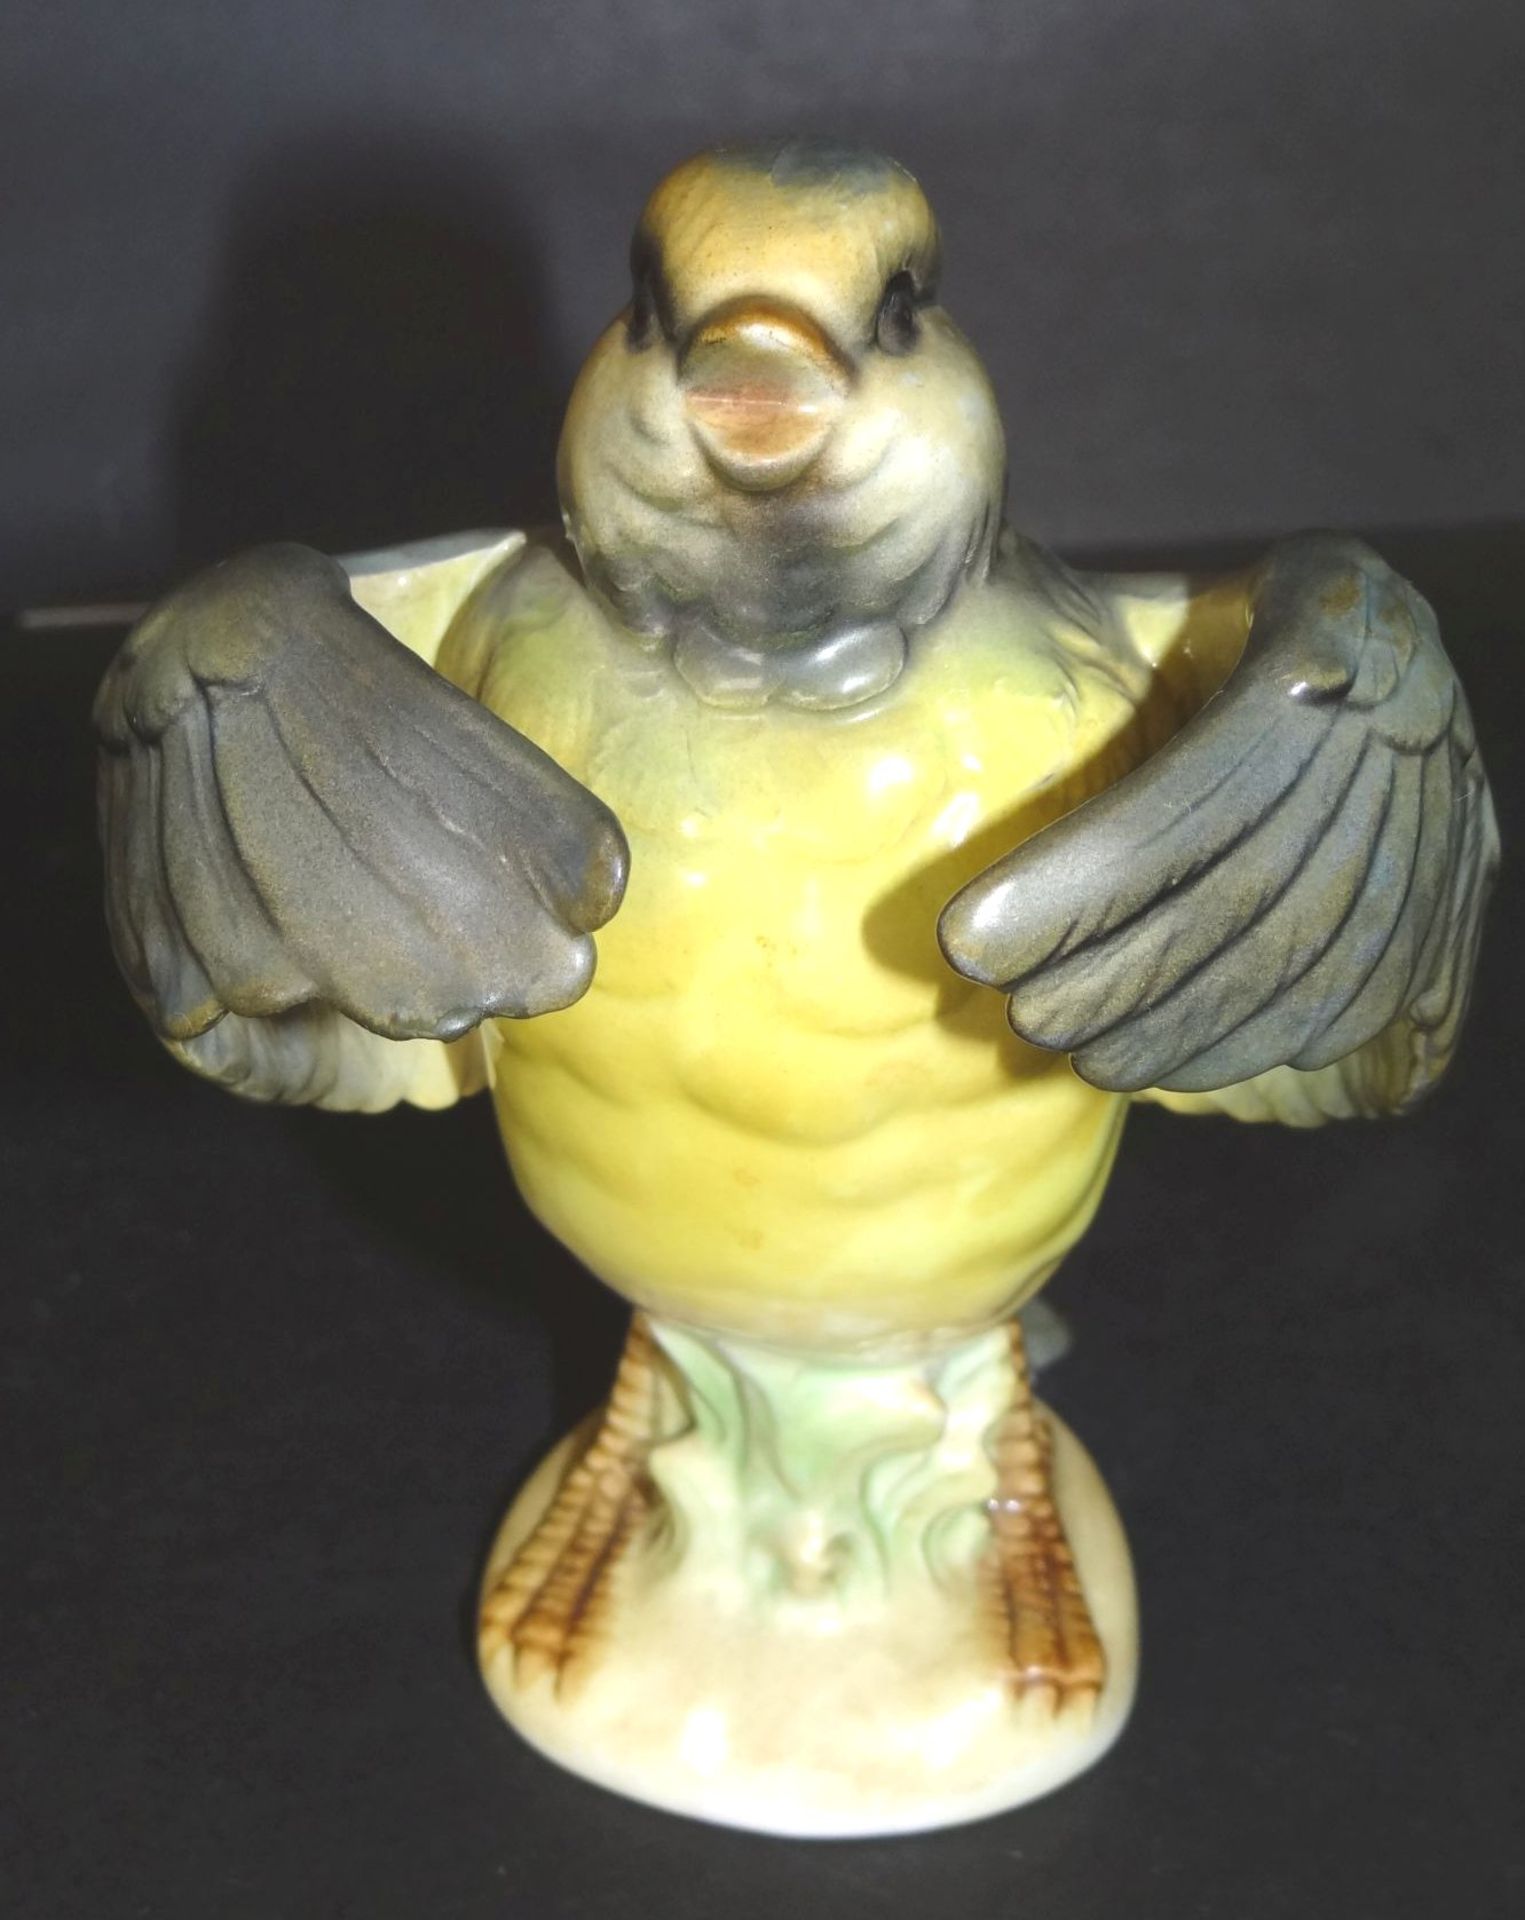 aufplusternder Vogel "Goebel", älter, bemalt, H-12,5 cm, anbei Kanarienvogel mit Hunges "Goebel" - Bild 2 aus 10